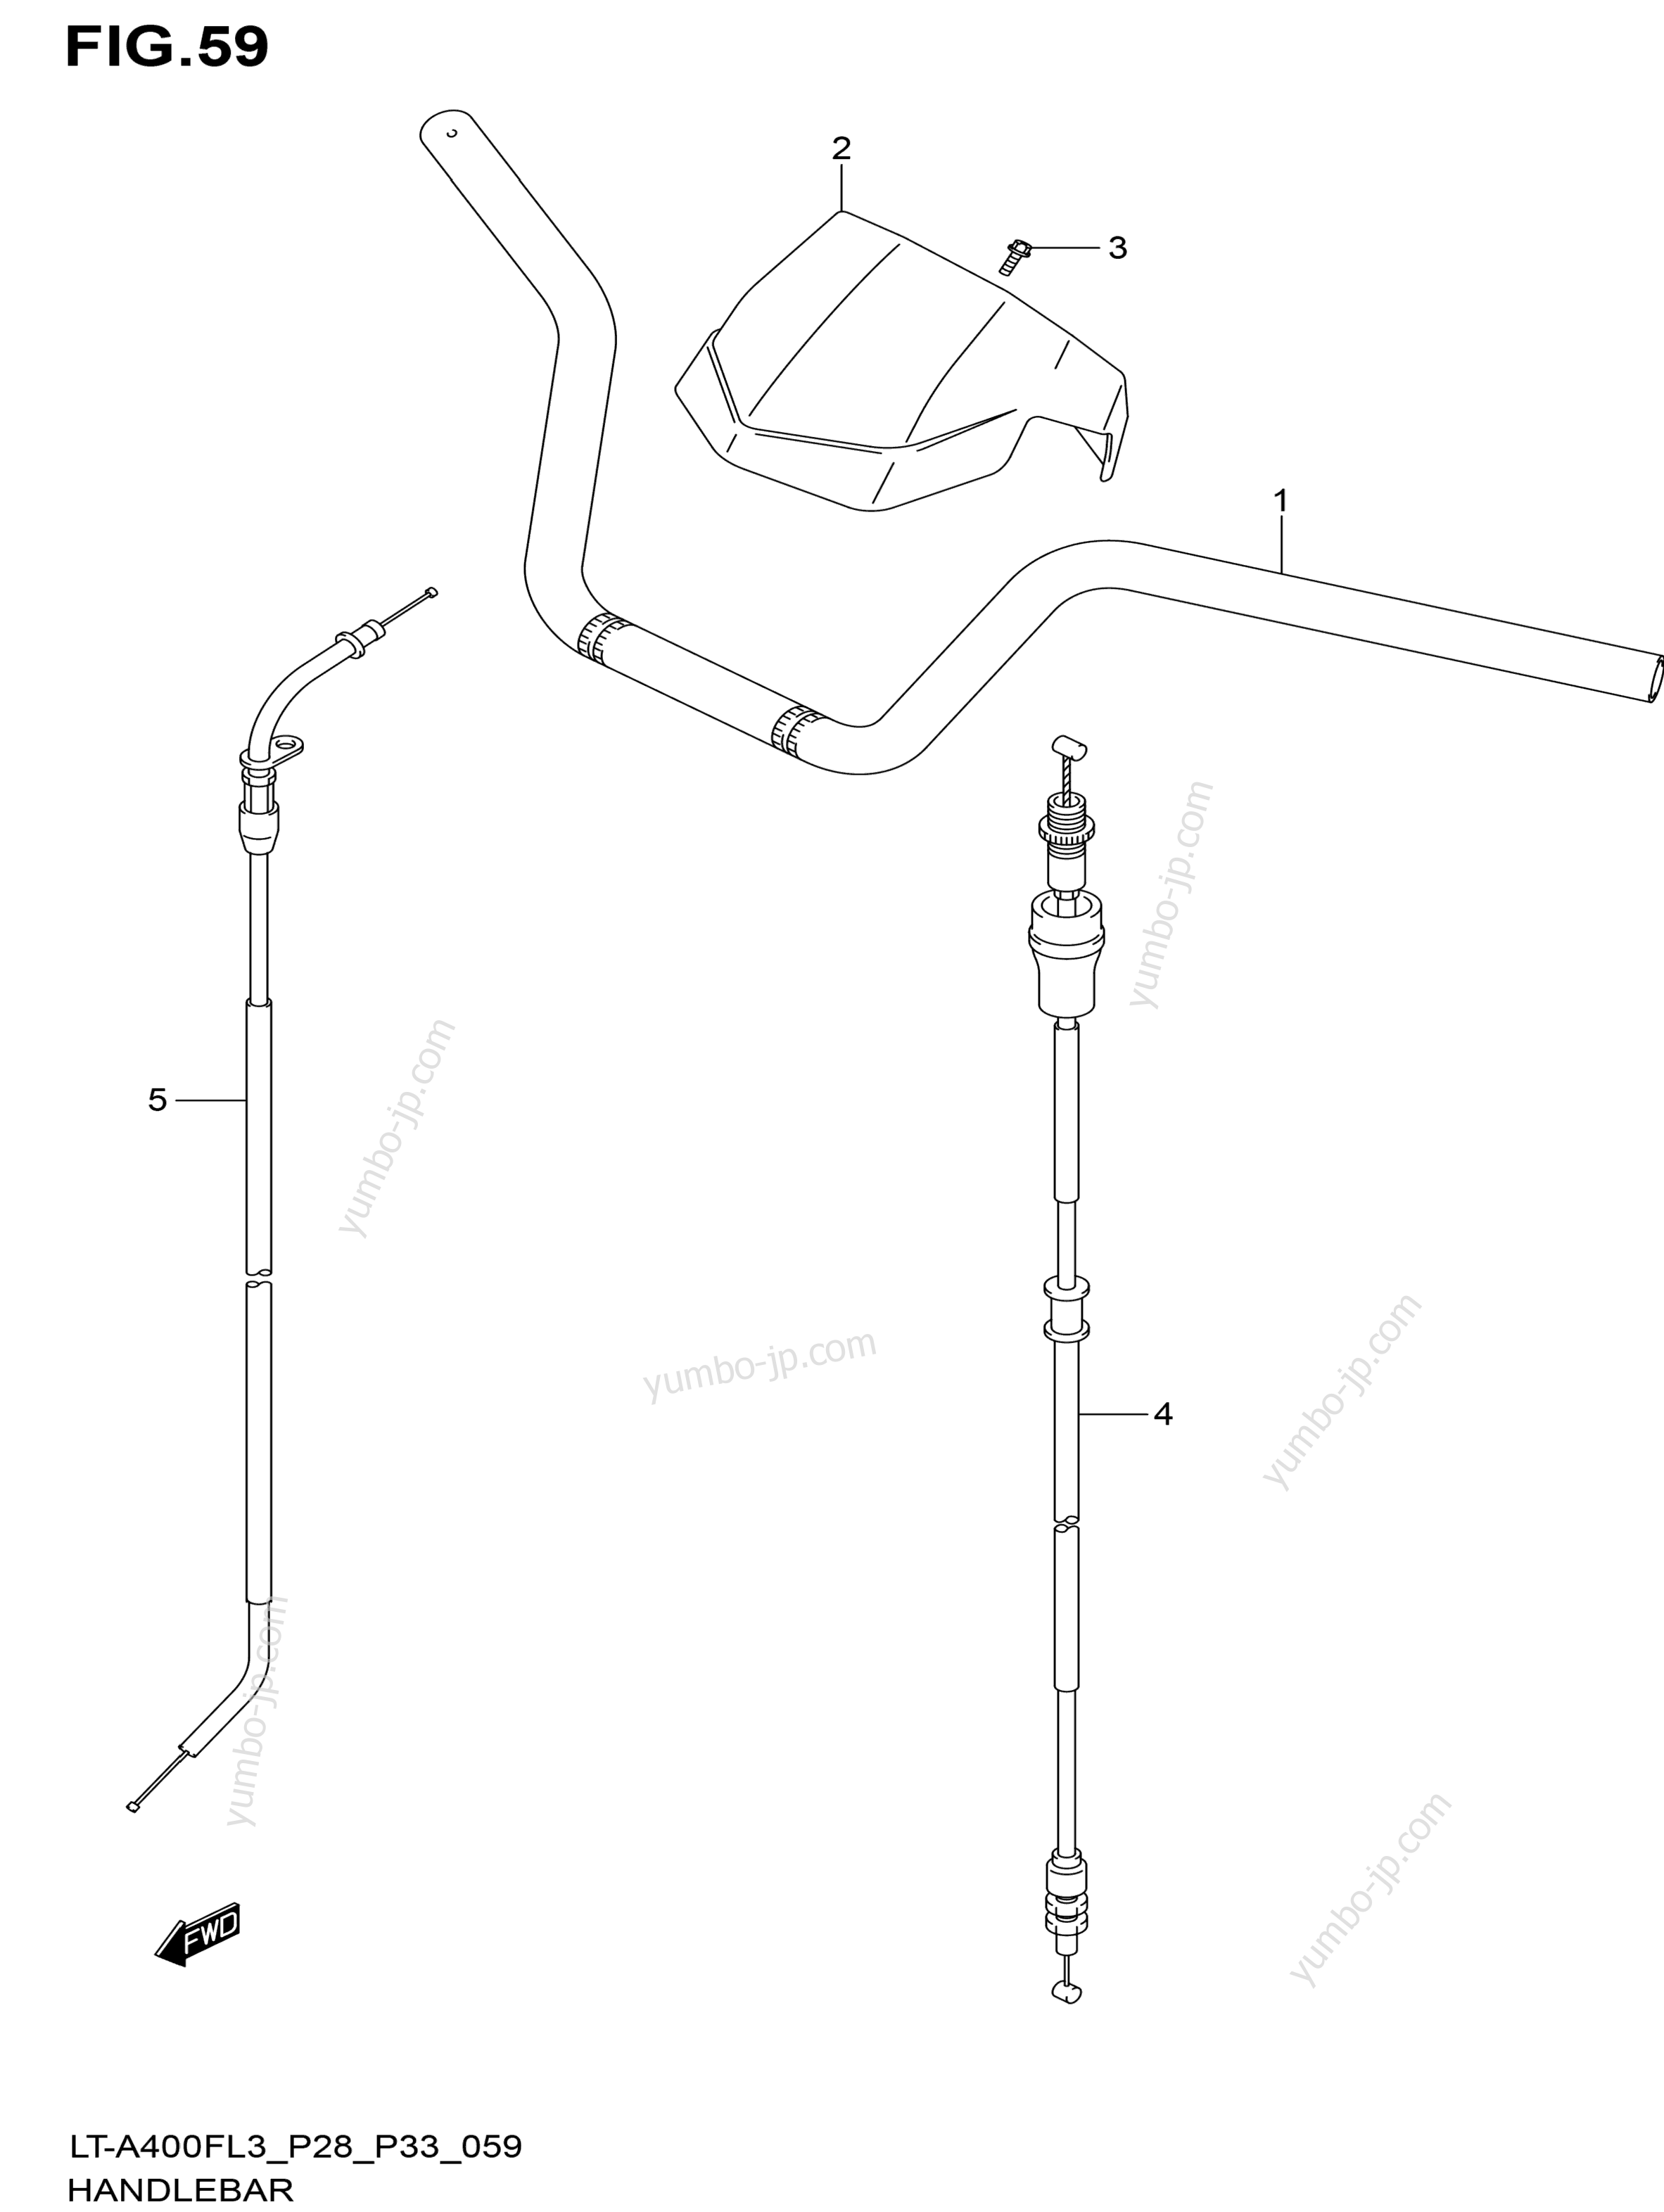 Румпель (рукоятка управления) для квадроциклов SUZUKI KingQuad (LT-A400F) 2013 г.